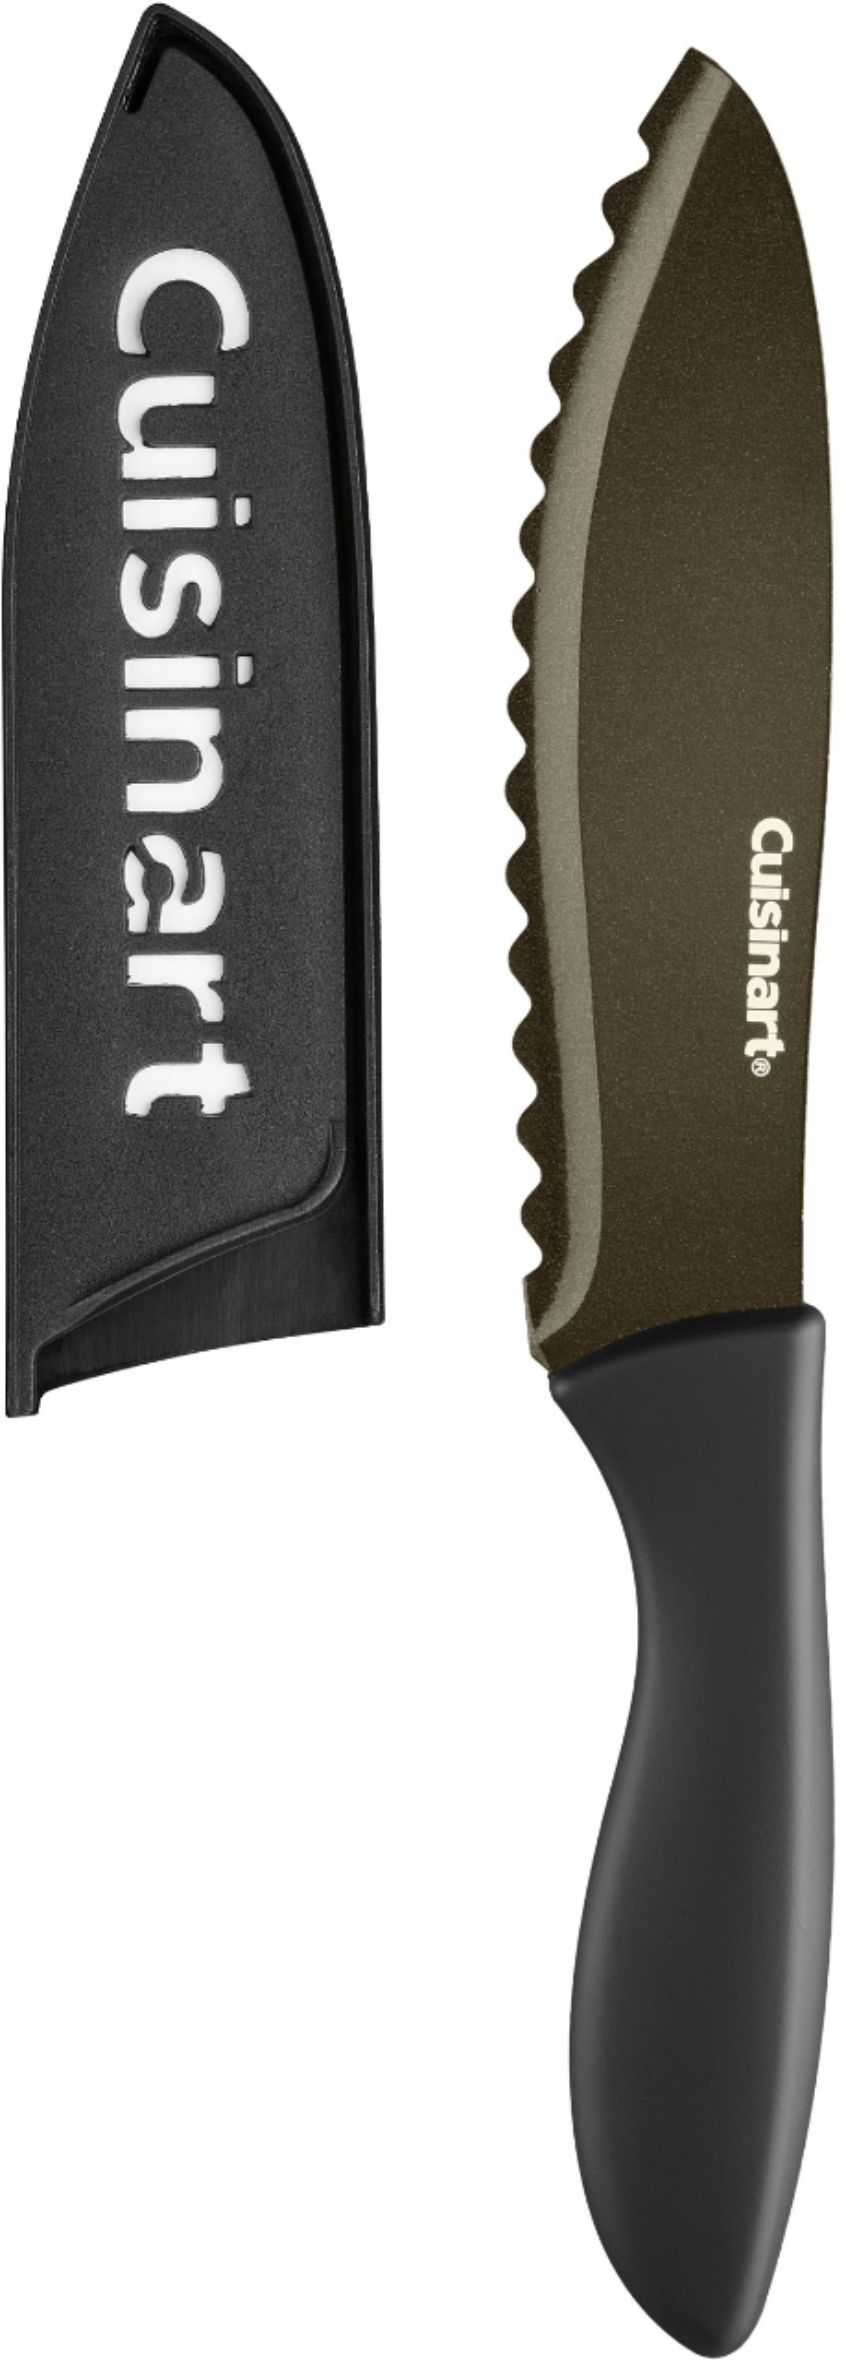 Cuisinart Nonstick Edge Collection C77NS 7P Knife set matte black